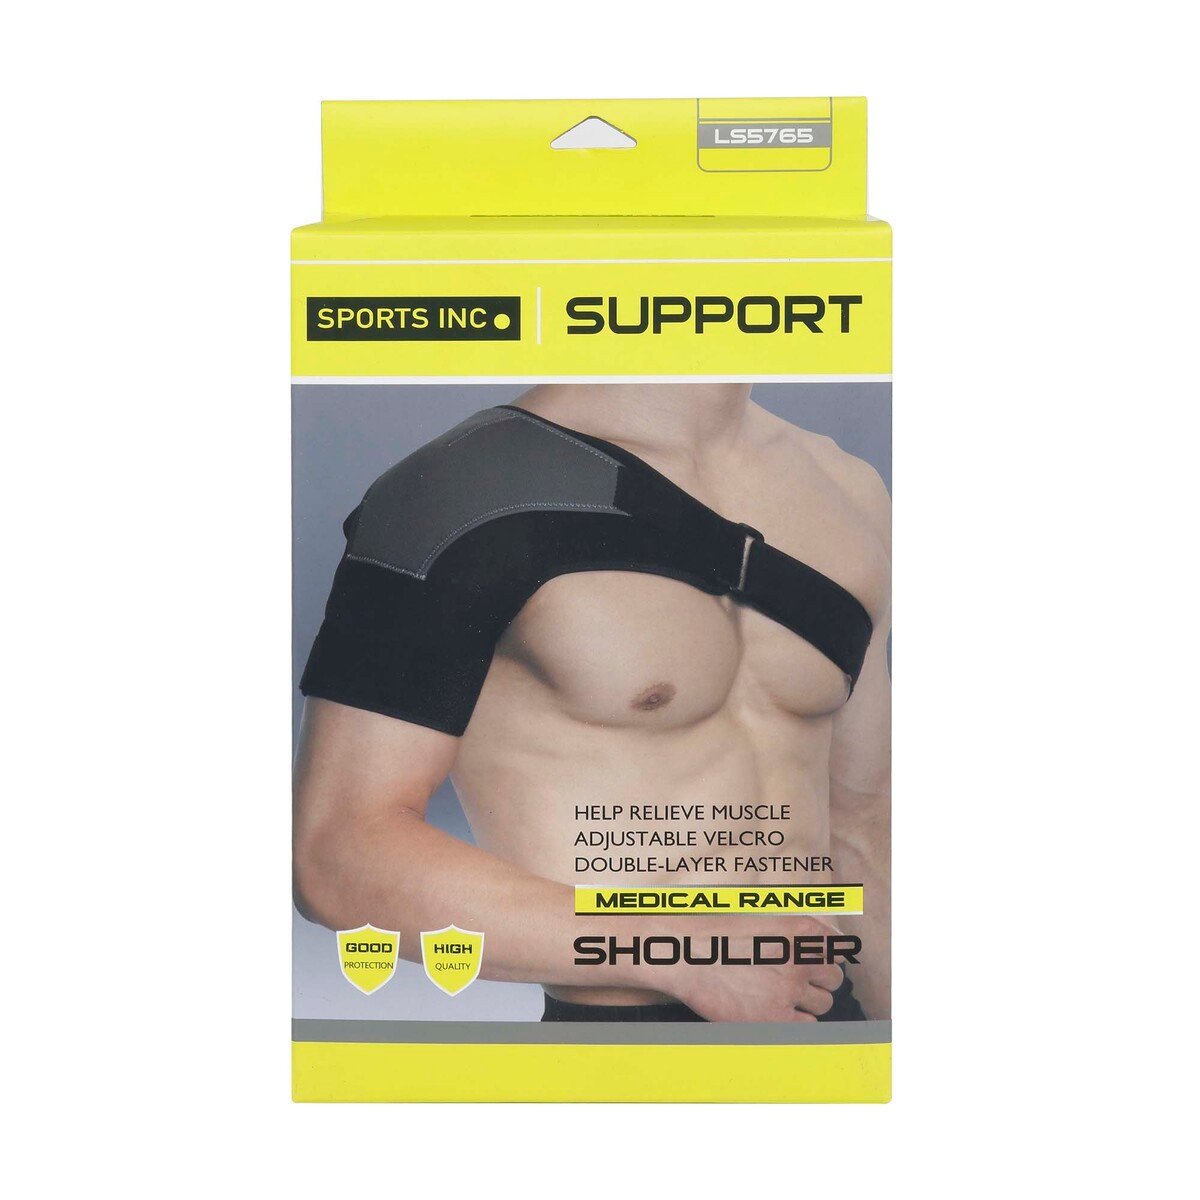 Sports Inc Shoulder Support, LS5765